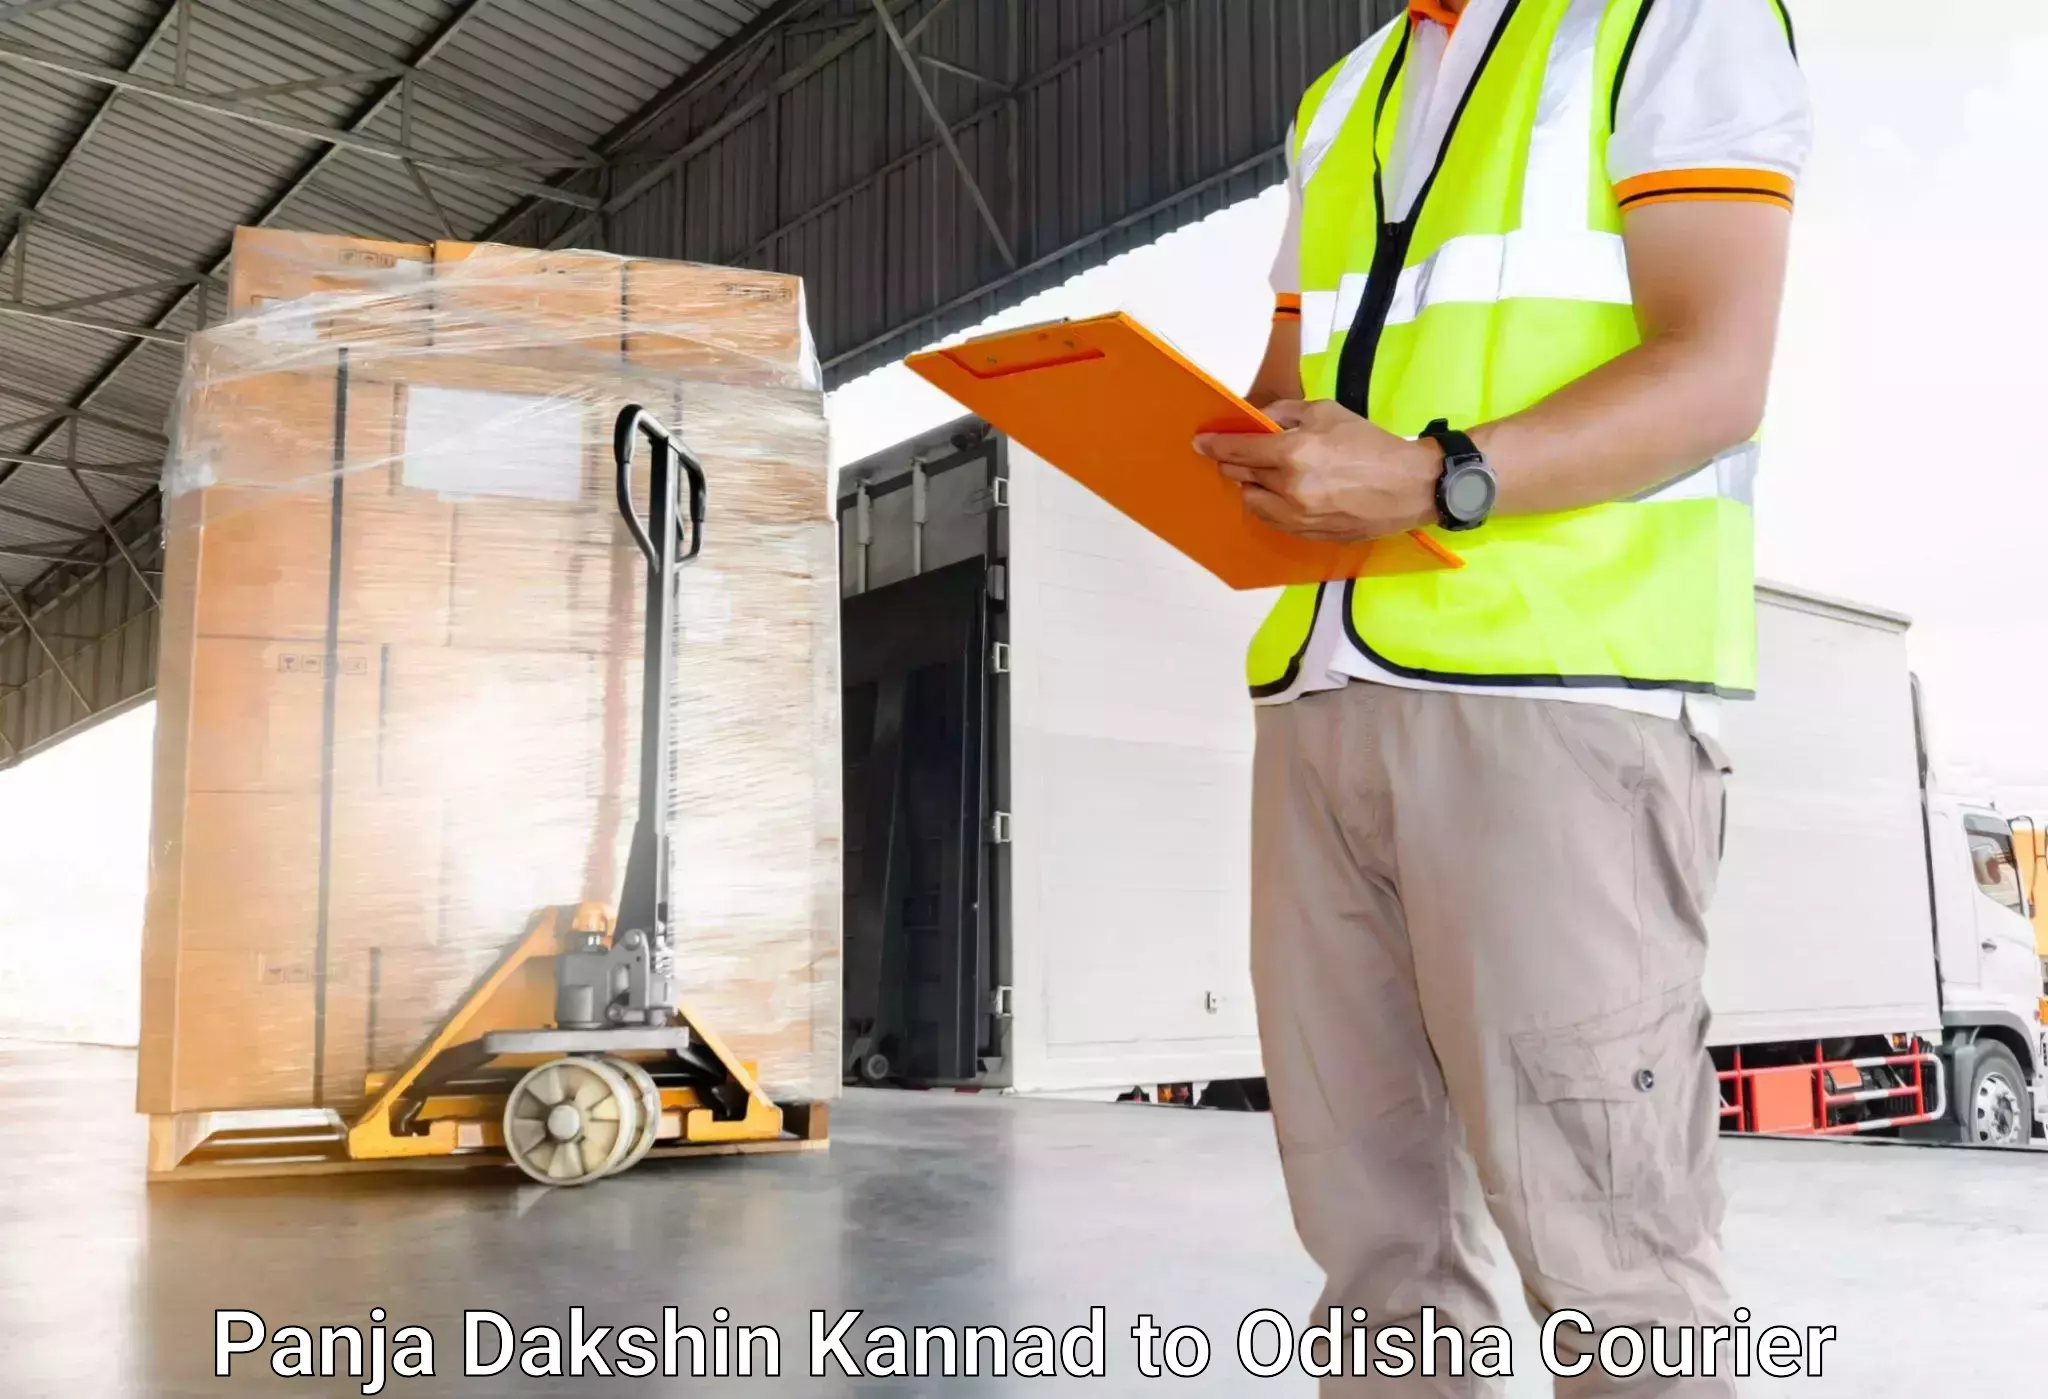 Luggage dispatch service Panja Dakshin Kannad to Sonepur